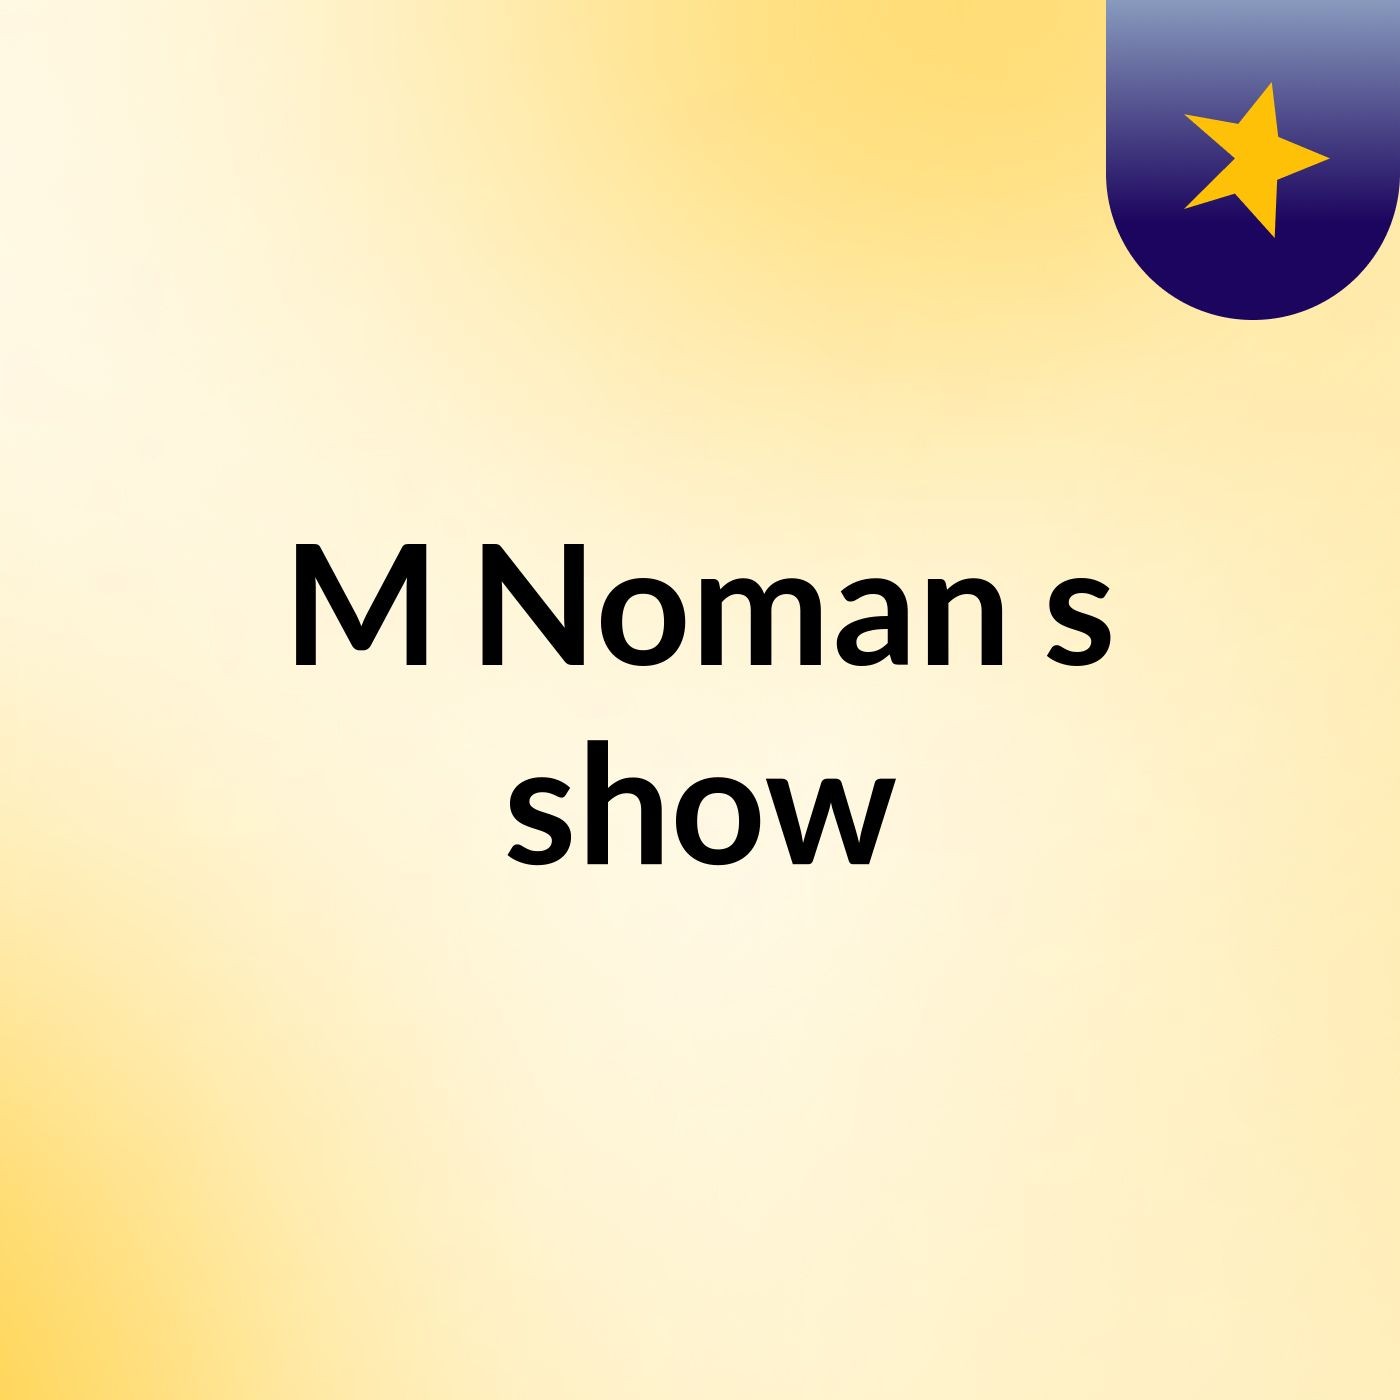 M Noman's show